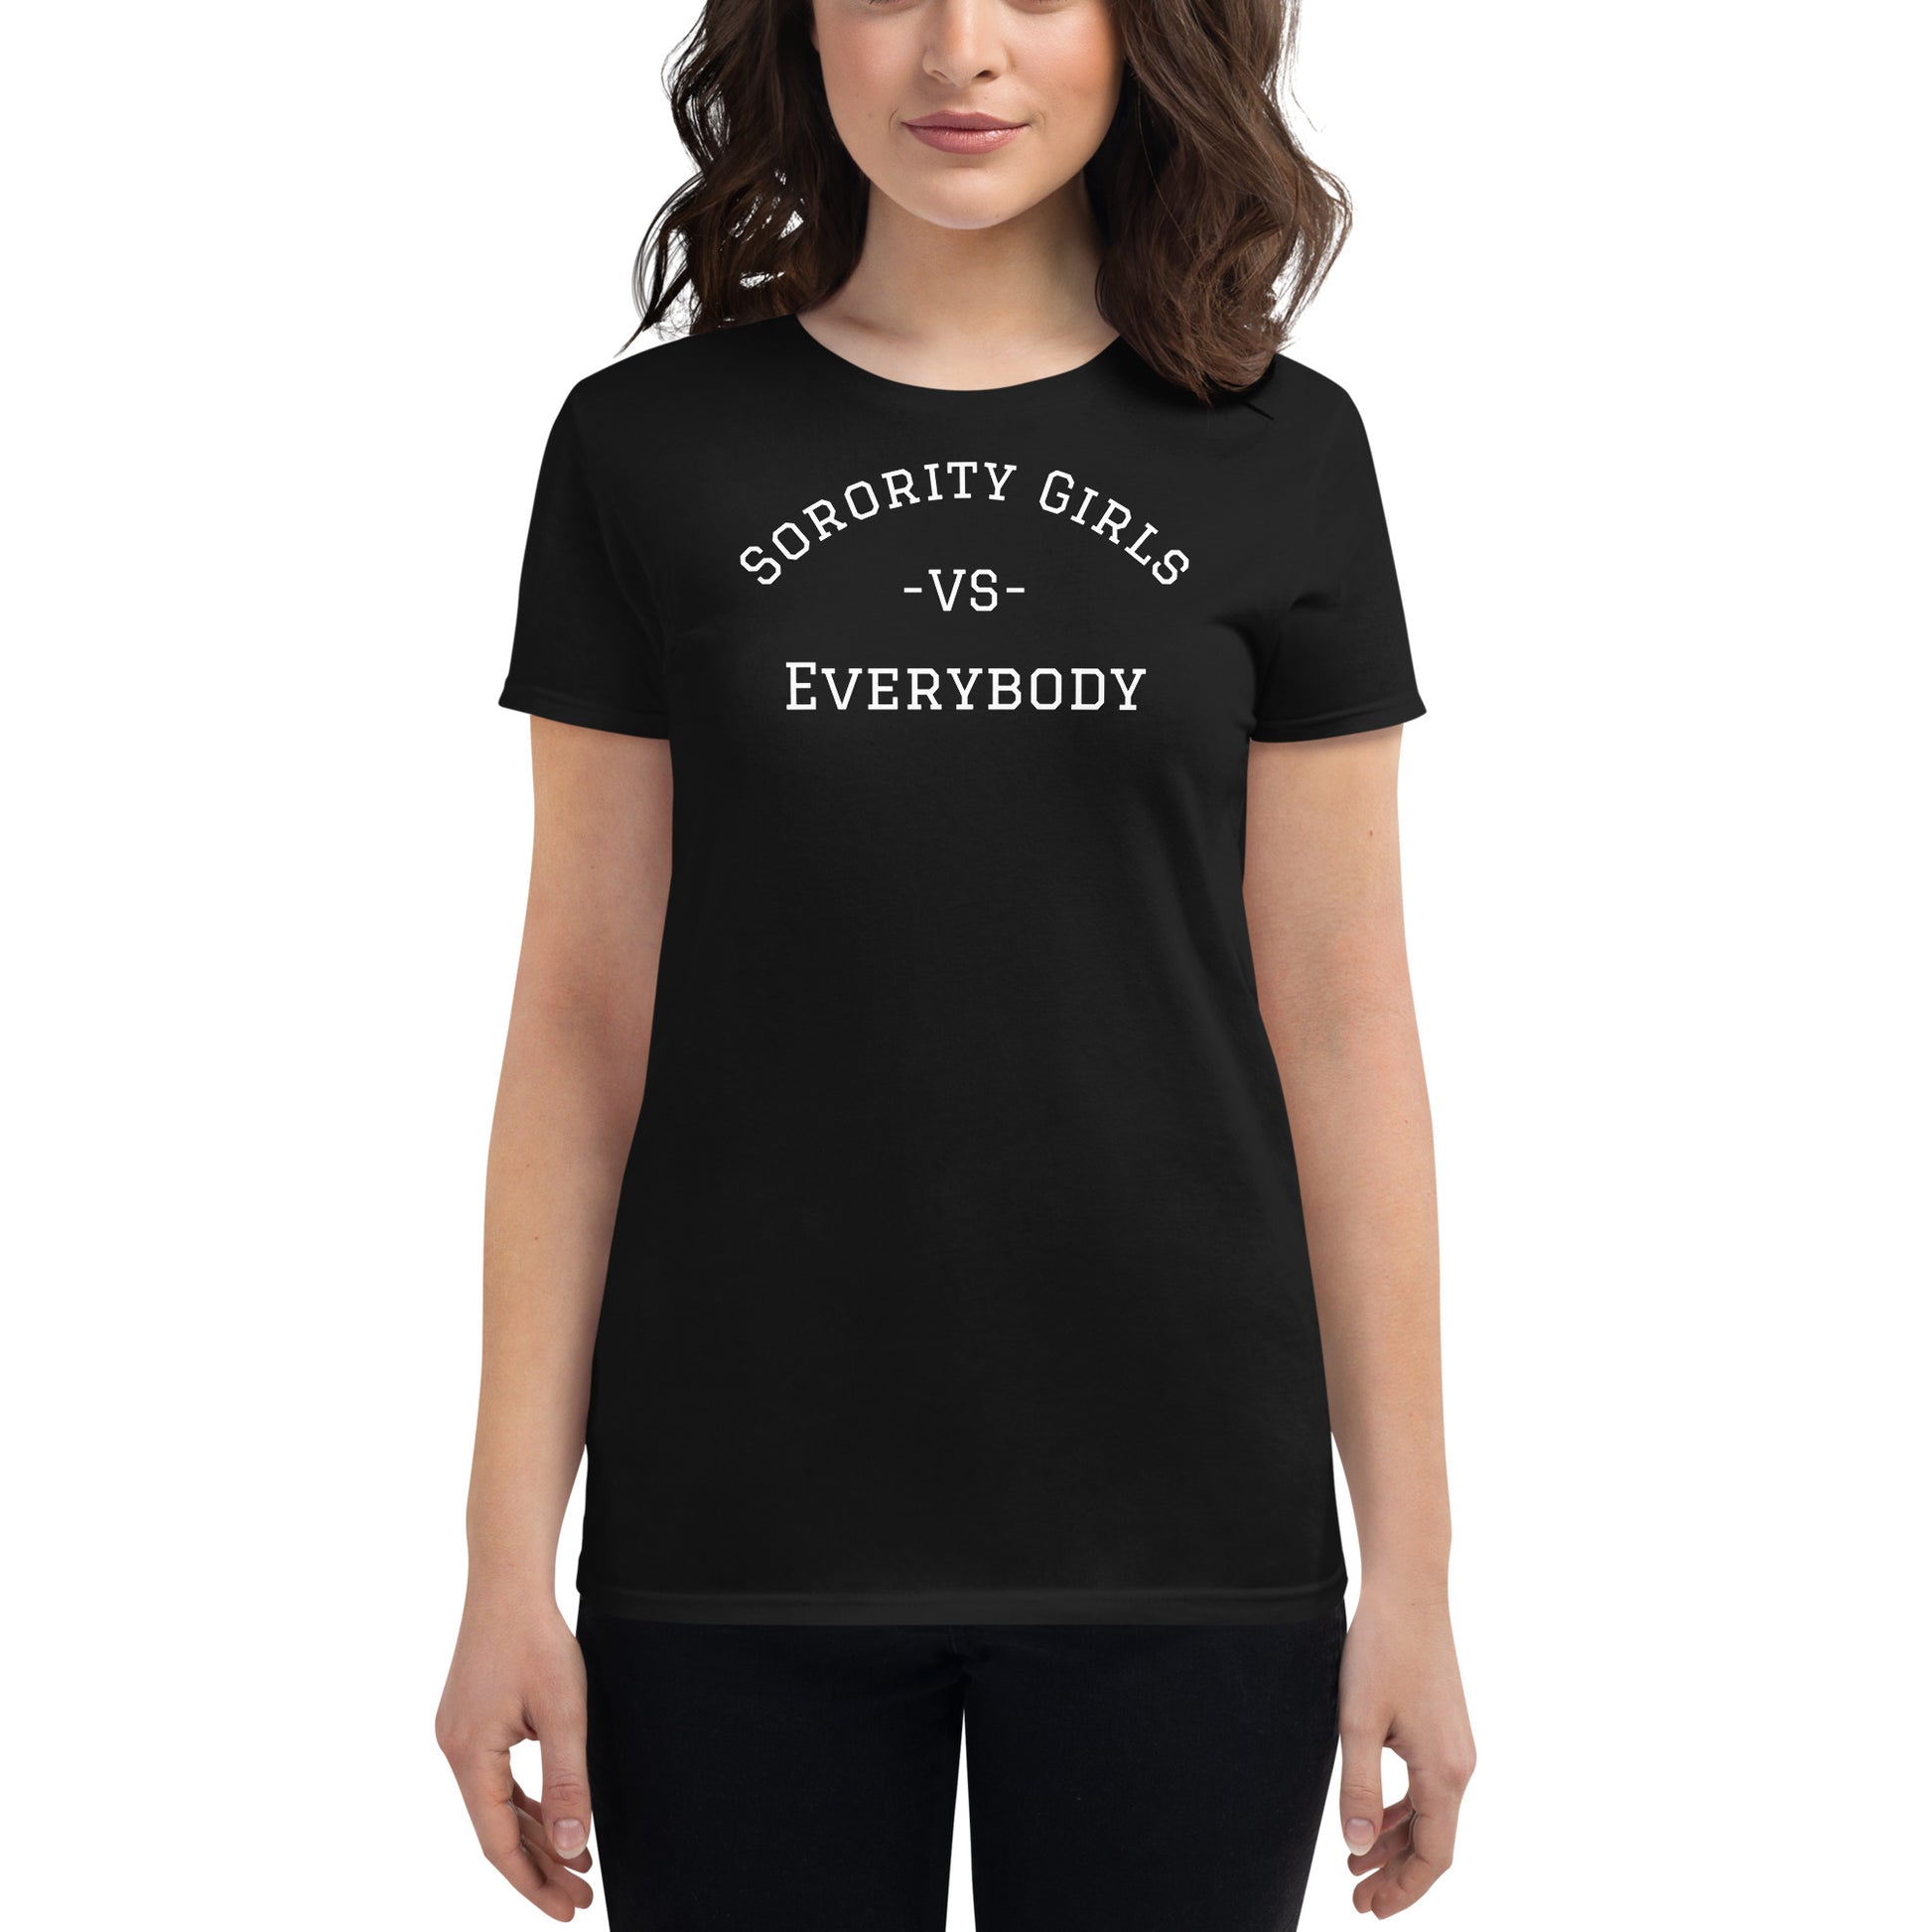 Women's black tee says "Sorority Girls VS Everybody"